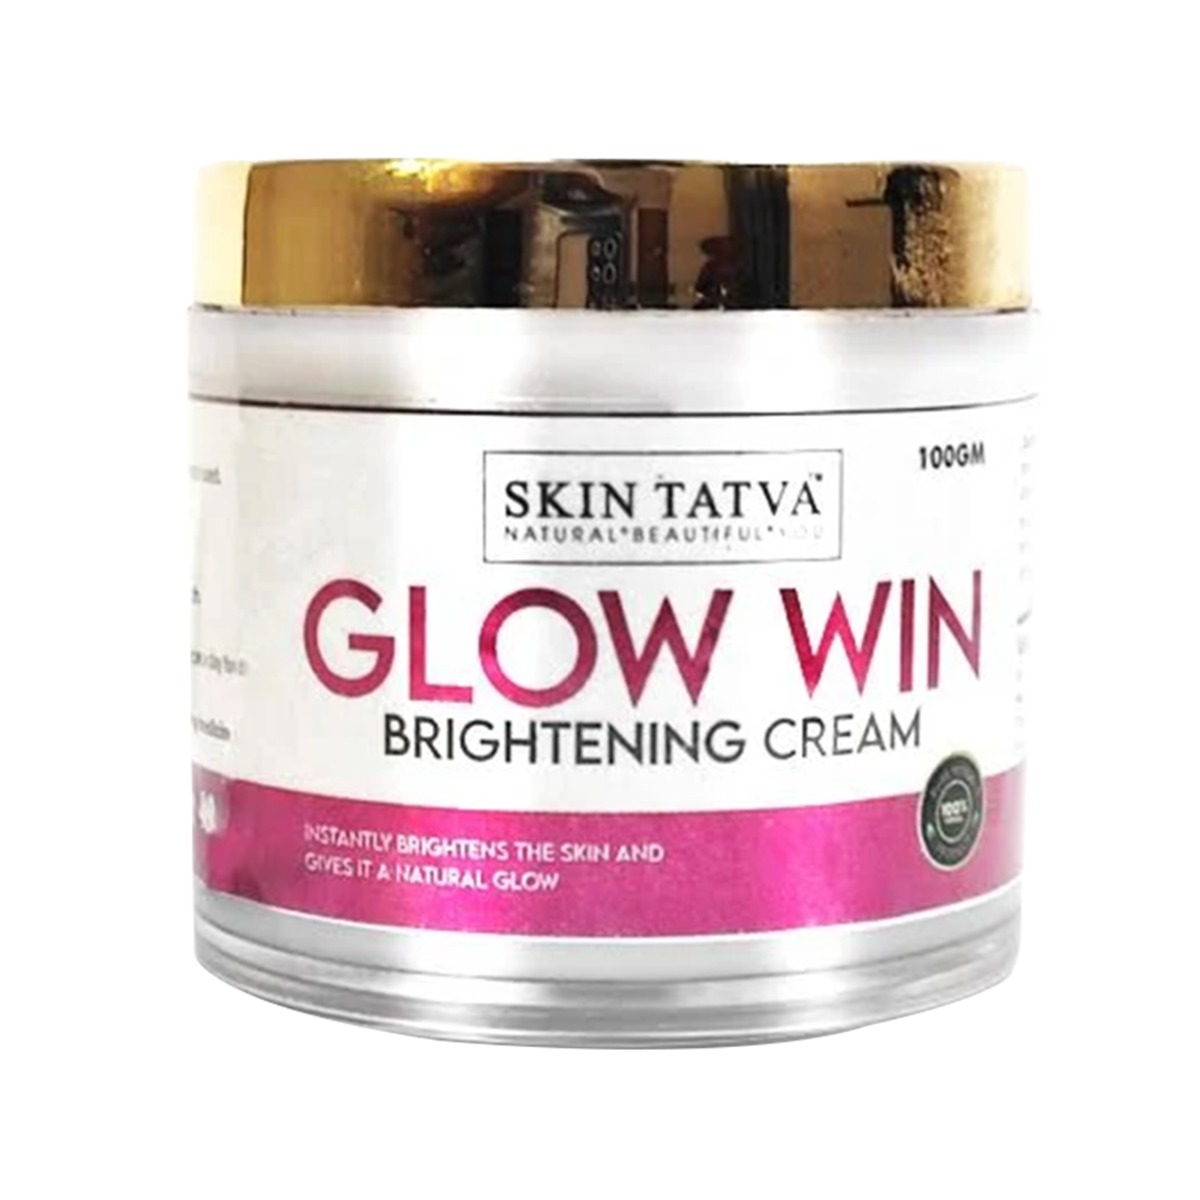 Skin Tatva Glow Win Brightening Cream, 100gm